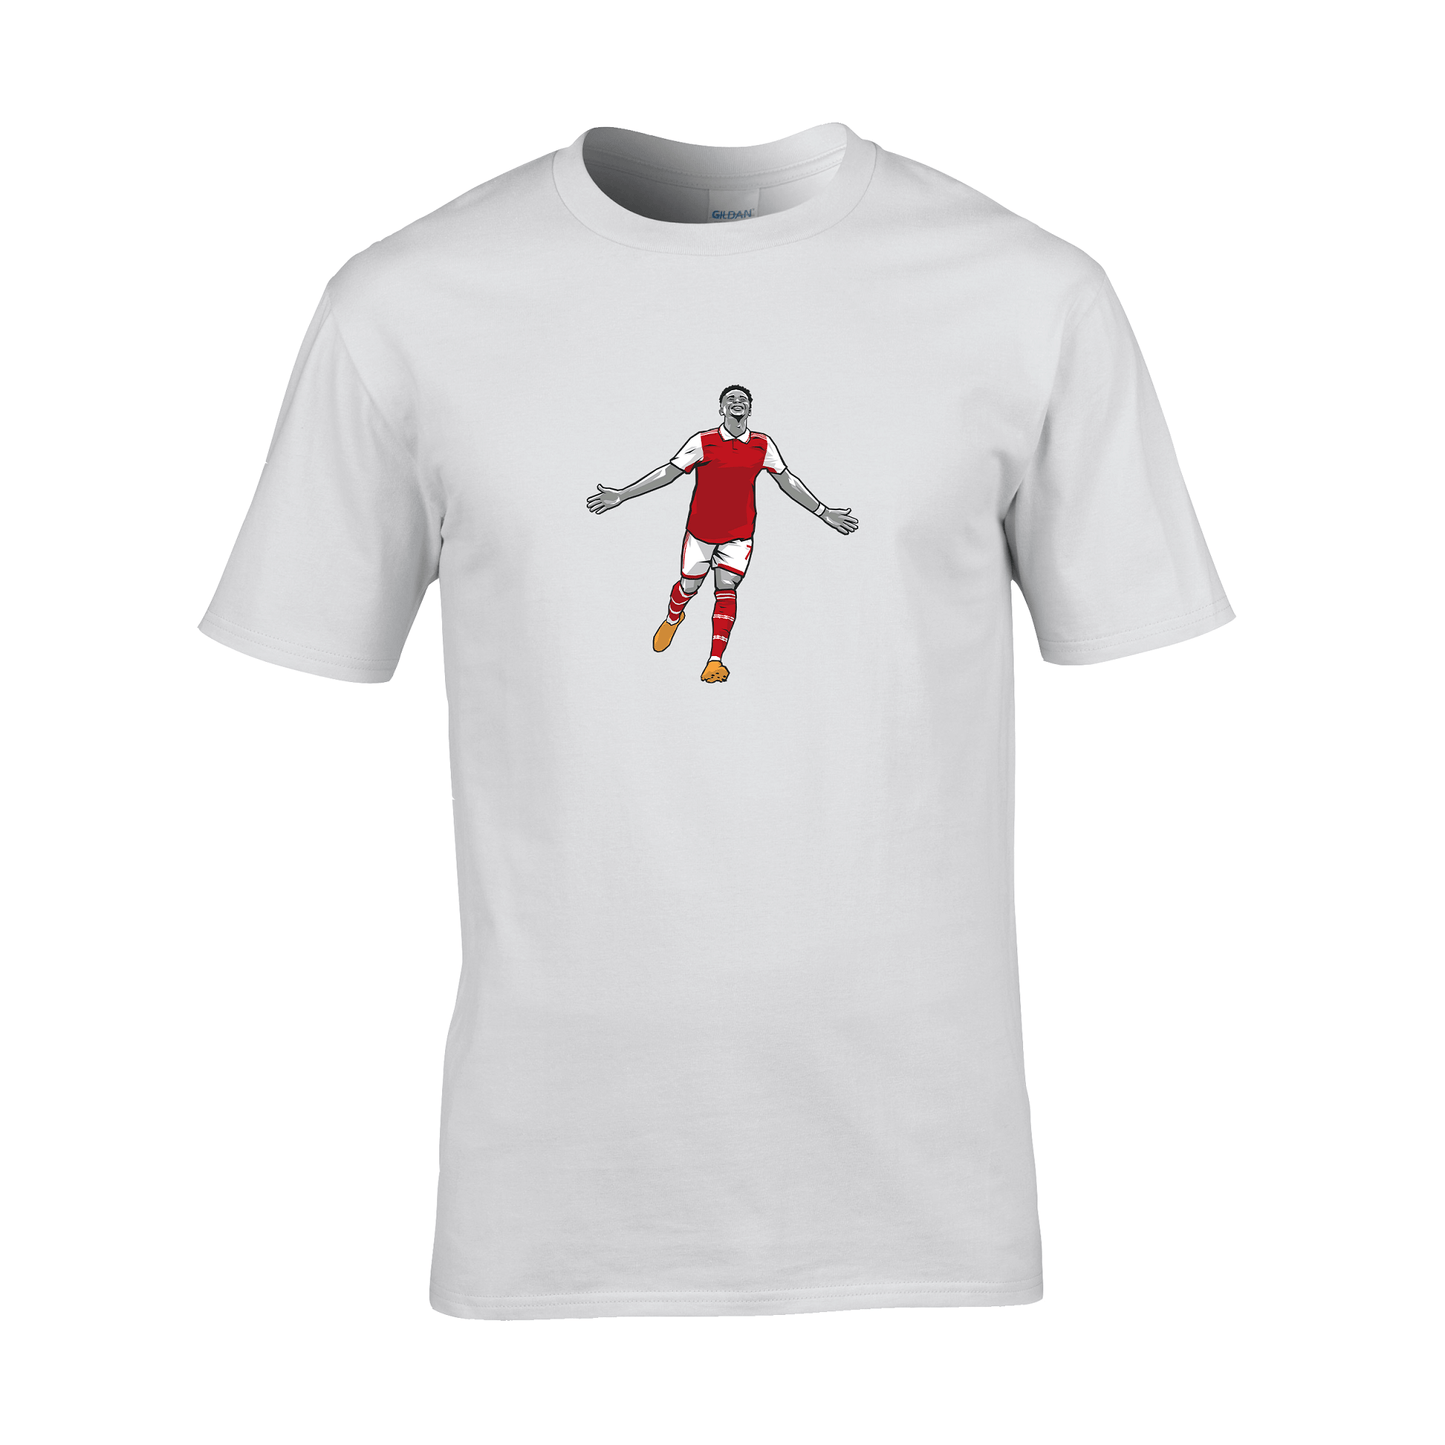 Bukayo Saka Arsenal-T-Shirt